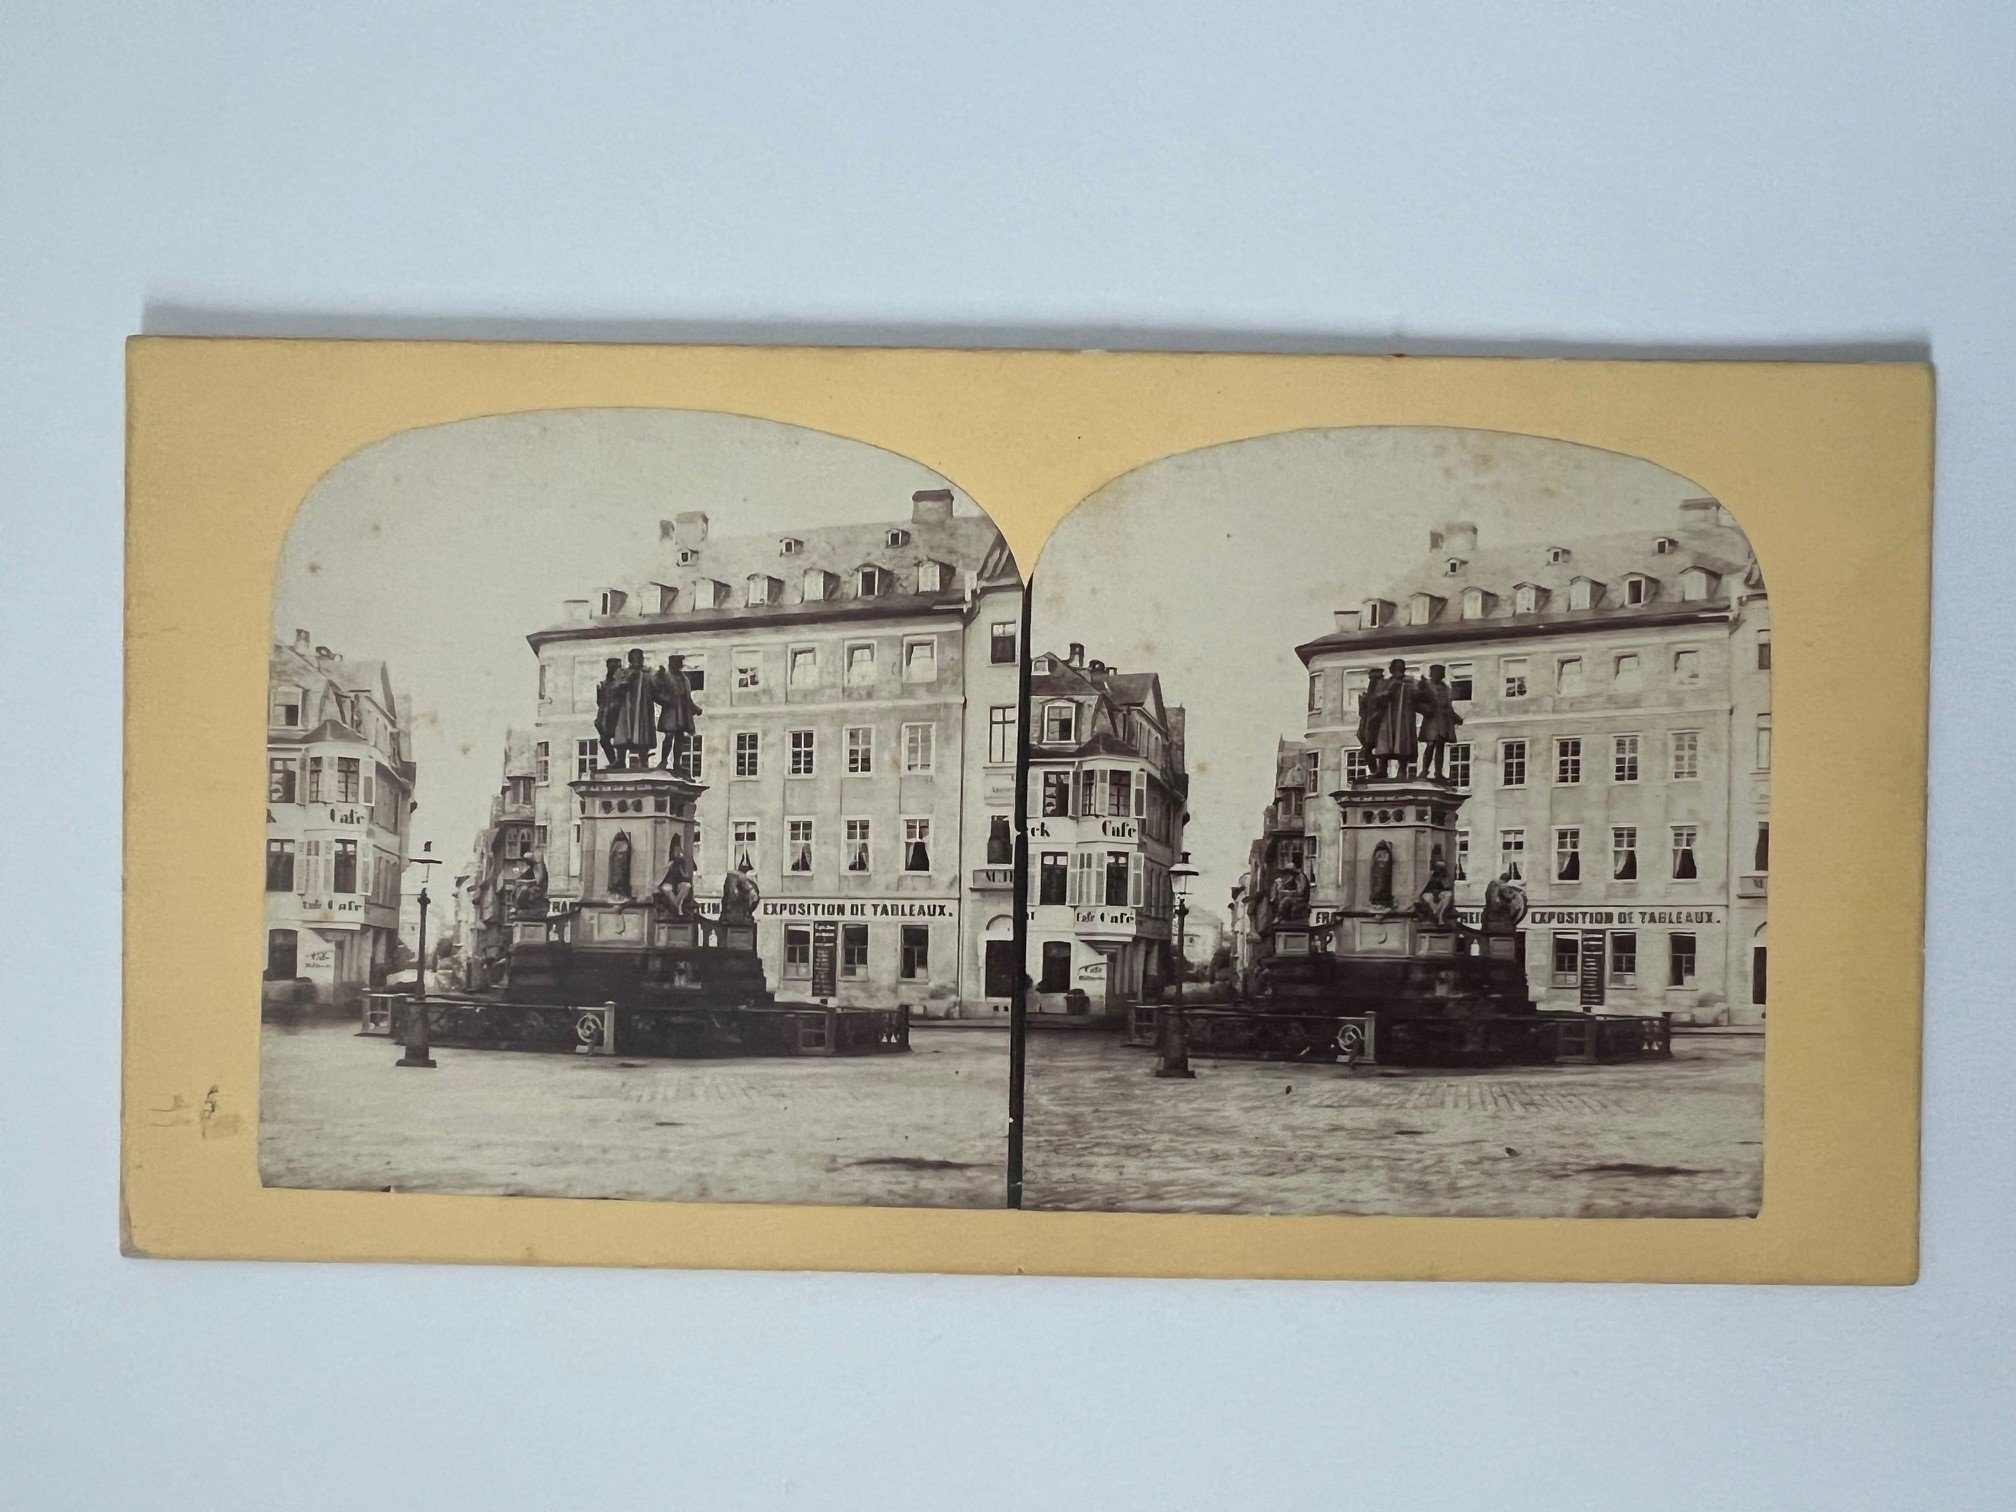 Stereobild, Unbekannter Fotograf, Frankfurt, Gutenberg-Denkmal, ca. 1865. (Taunus-Rhein-Main - Regionalgeschichtliche Sammlung Dr. Stefan Naas CC BY-NC-SA)